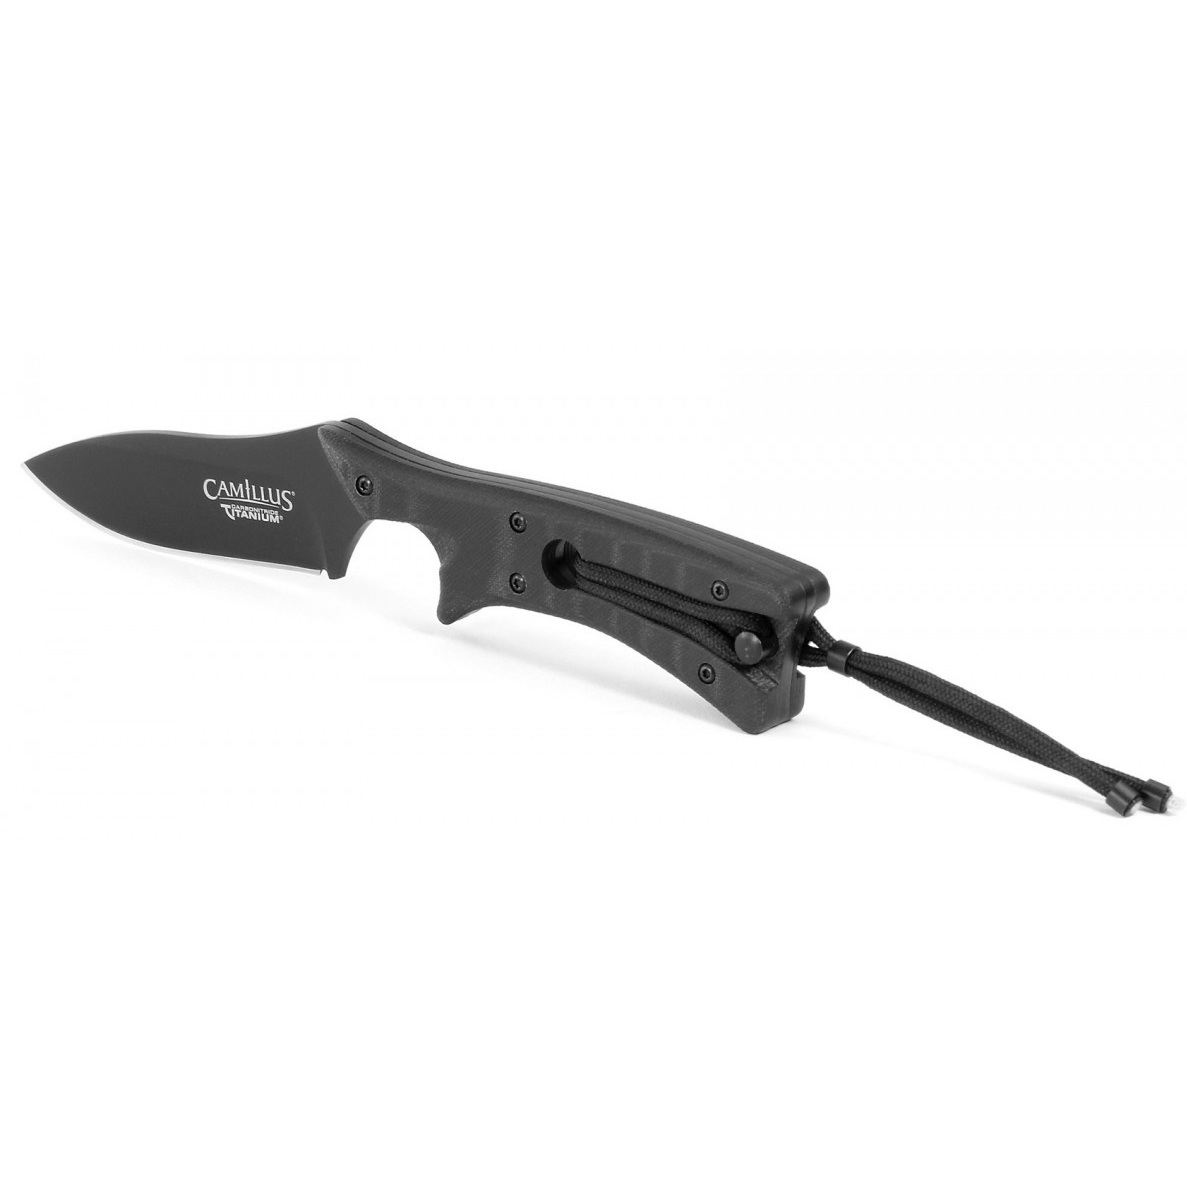 фото Нож с фиксированным клинком camillus tyrant, сталь d2 tool steel, рукоять стеклотекстолит g-10, чёрный